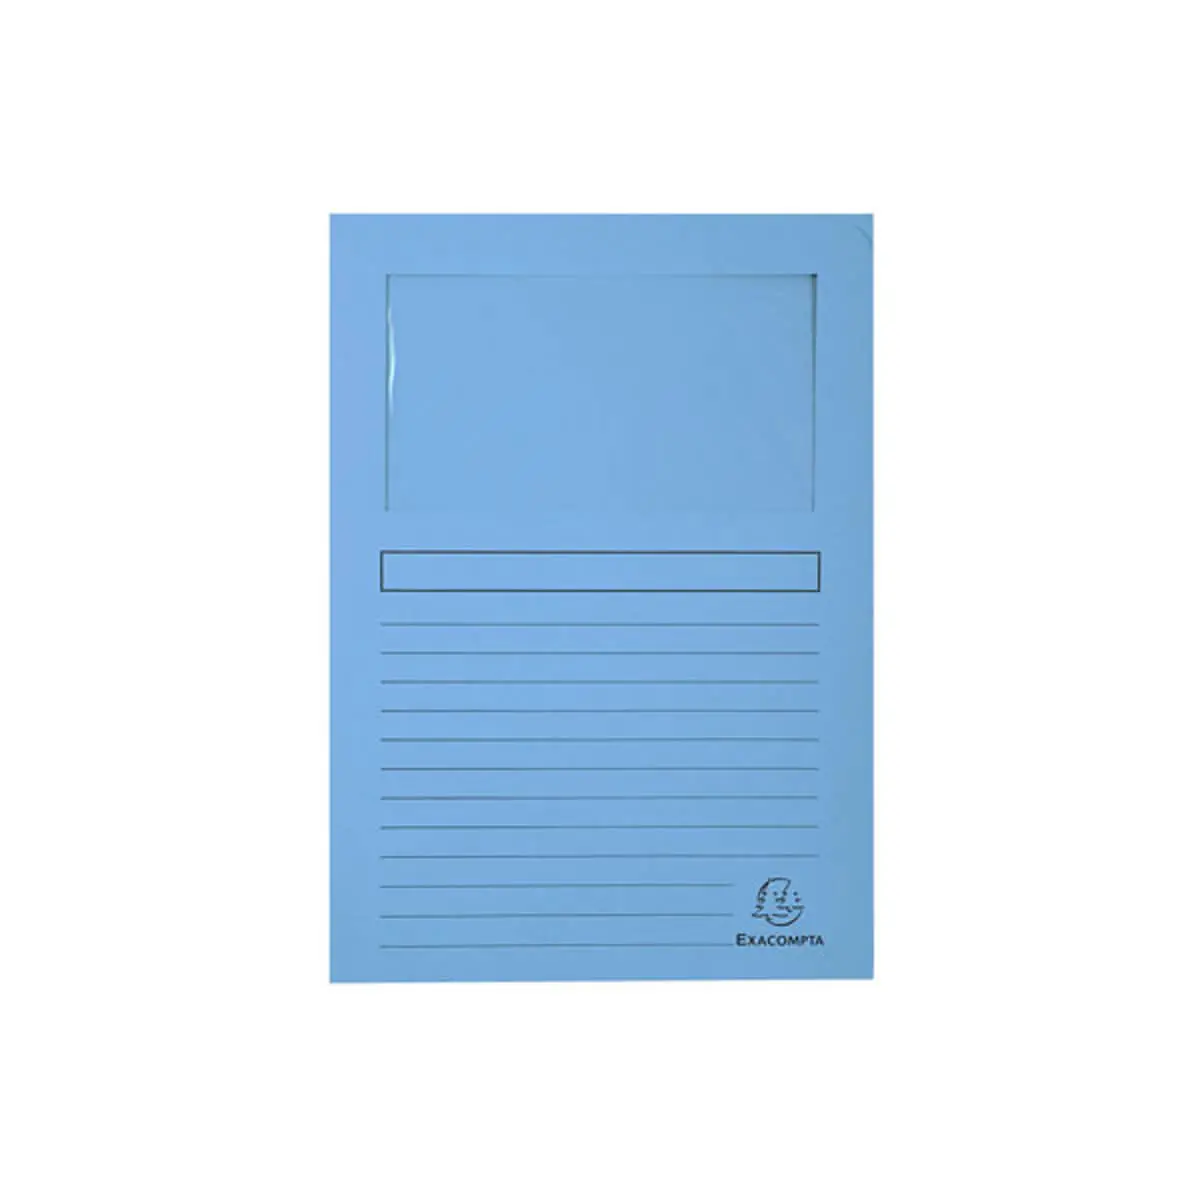 Paquet de 25 chemises à fenêtre Forever® 120g/m² - 22x31cm - Bleu clair - EXACOMPTA photo du produit